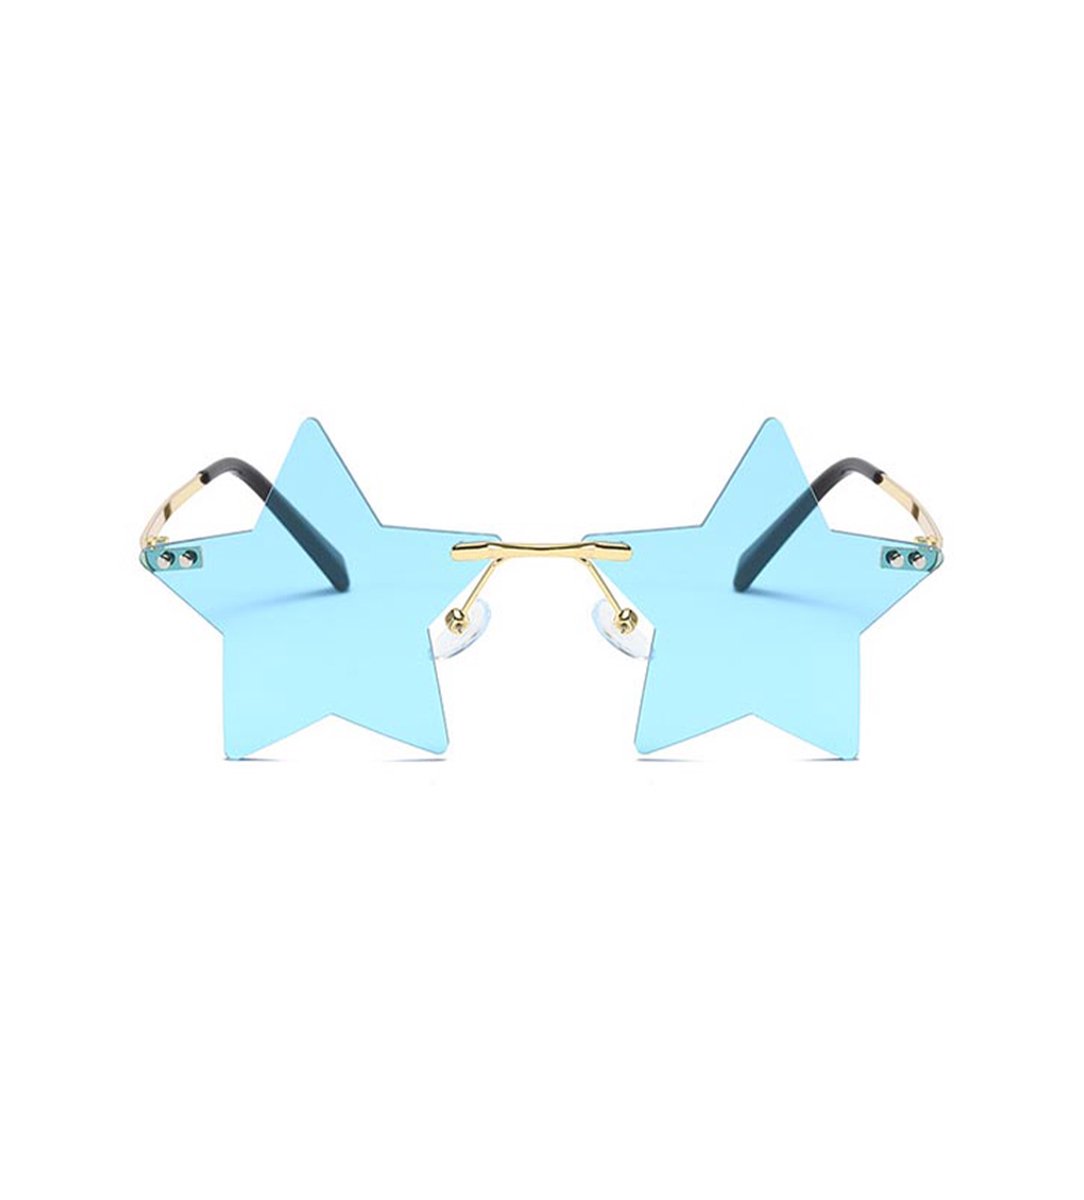 Freaky Glasses - Ster zonnebril - Festival rave bril - Heren - Dames - Blauwe lenzen